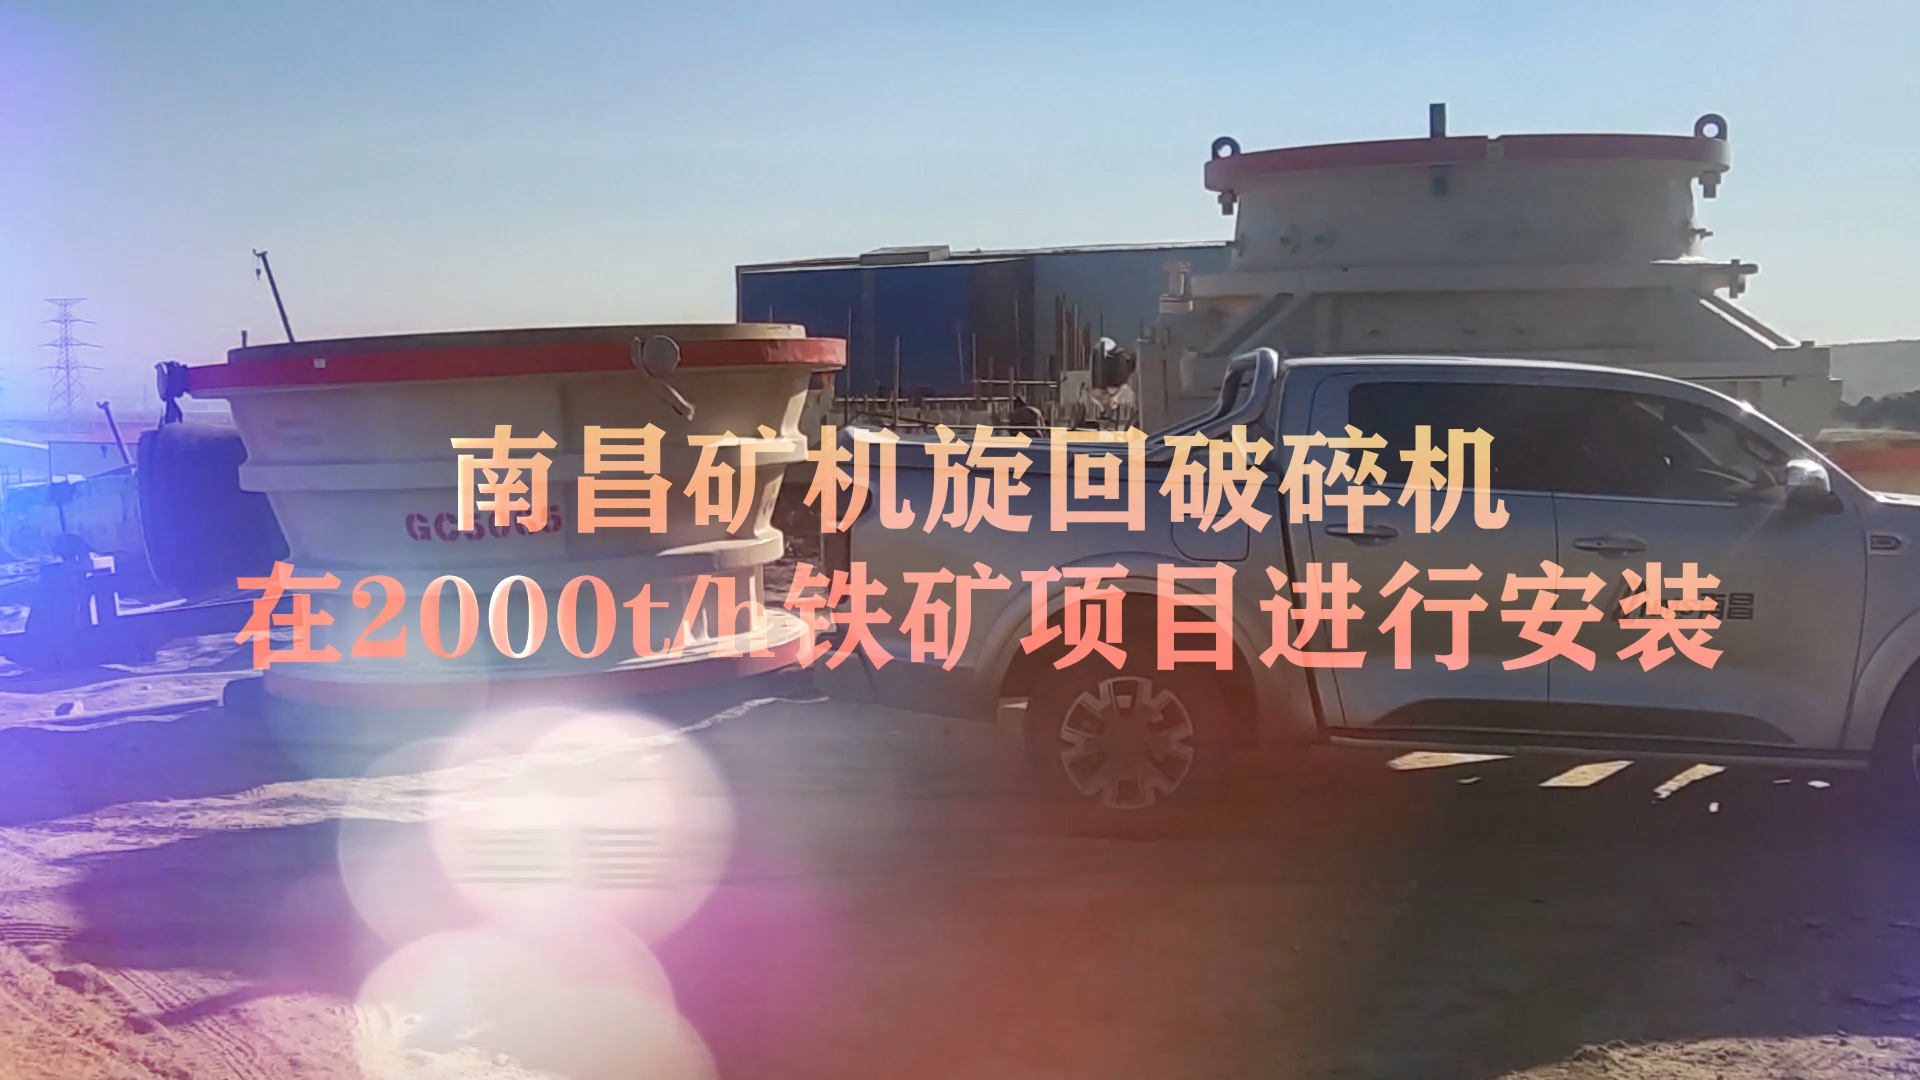 南昌矿机旋回破碎机在2000t/h铁矿项目进行安装